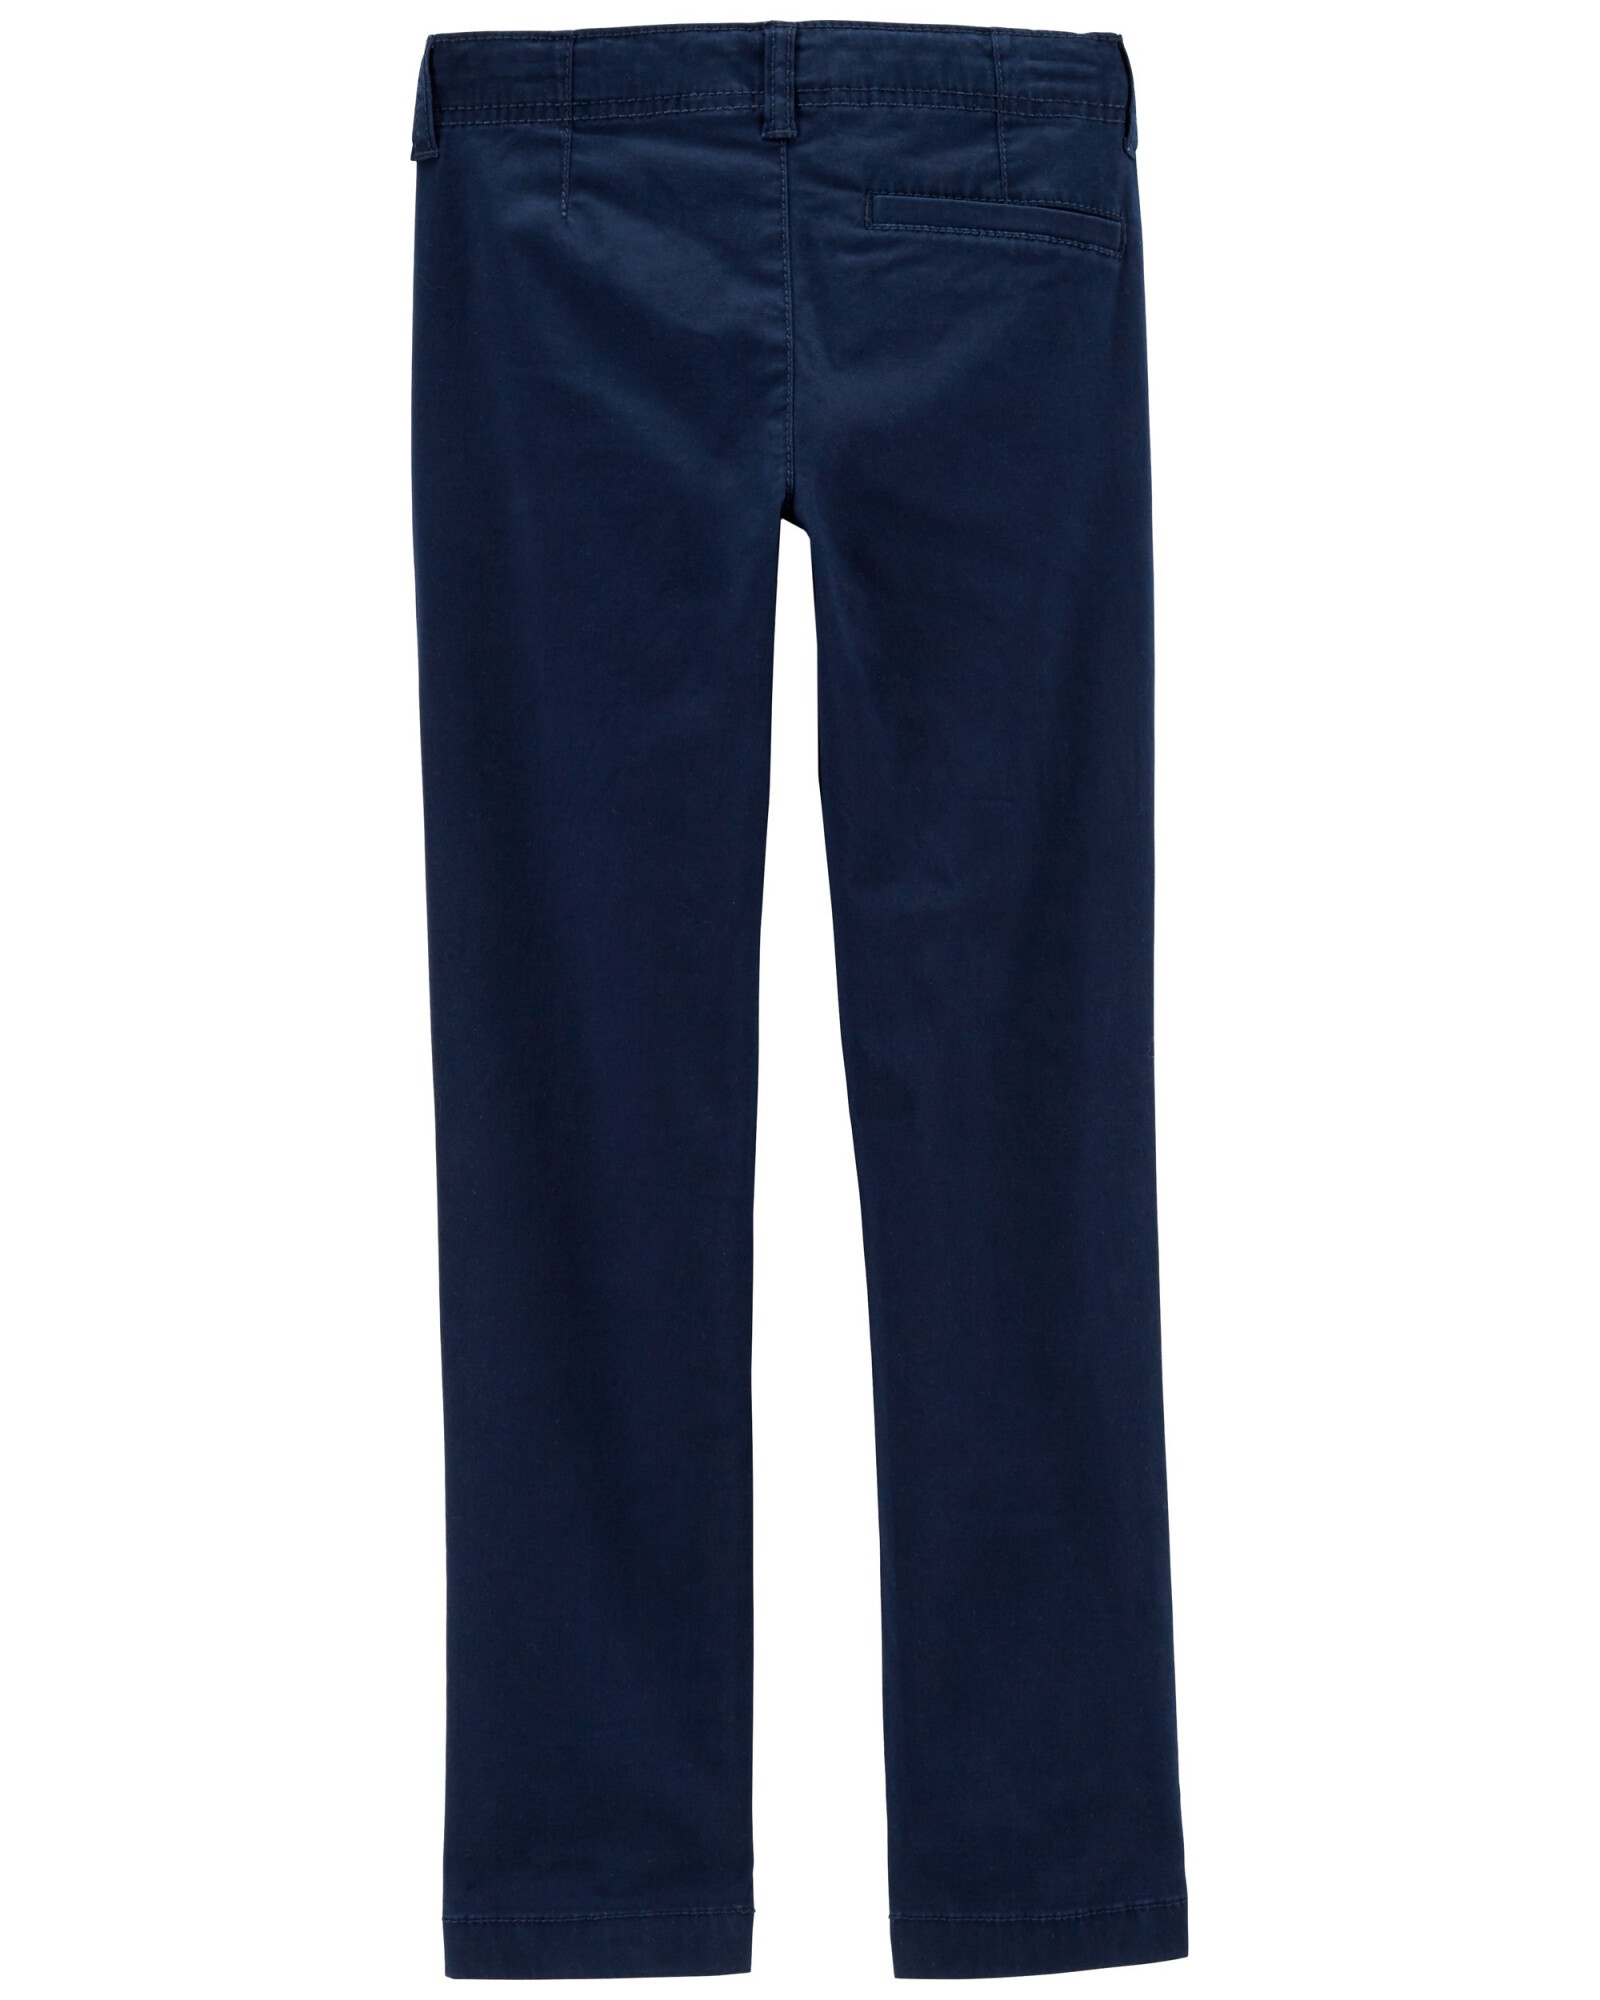 Pantalón de algodón, clásico, elastizado. Talles 6-14 Sin color